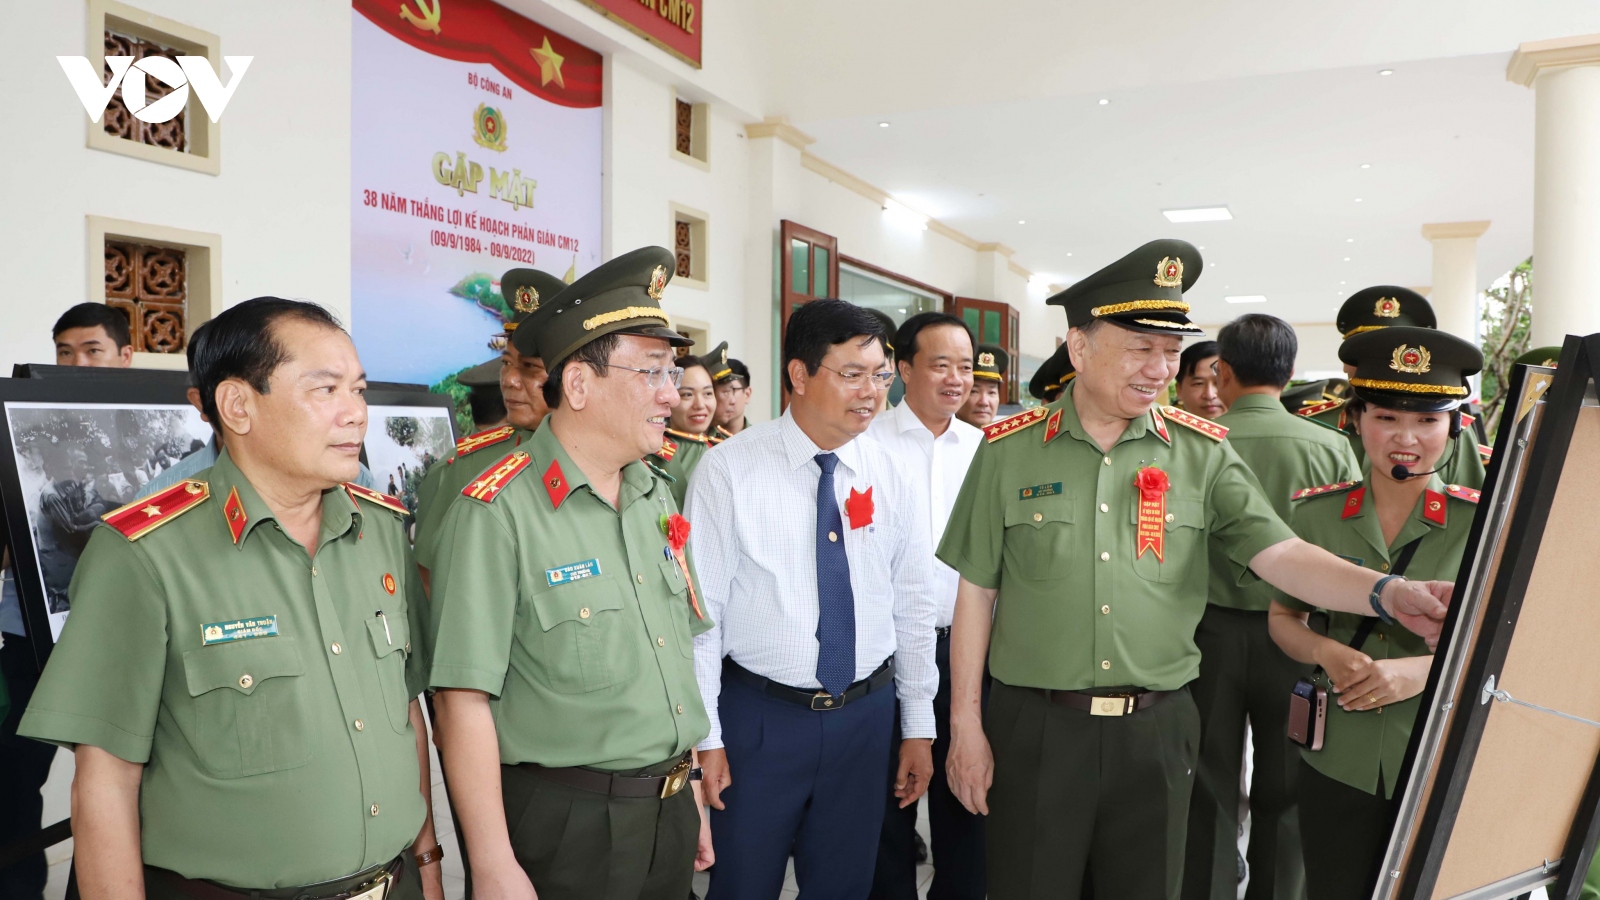 Bộ trưởng Tô Lâm dự gặp mặt kỷ niệm thắng lợi Kế hoạch phản gián CM12